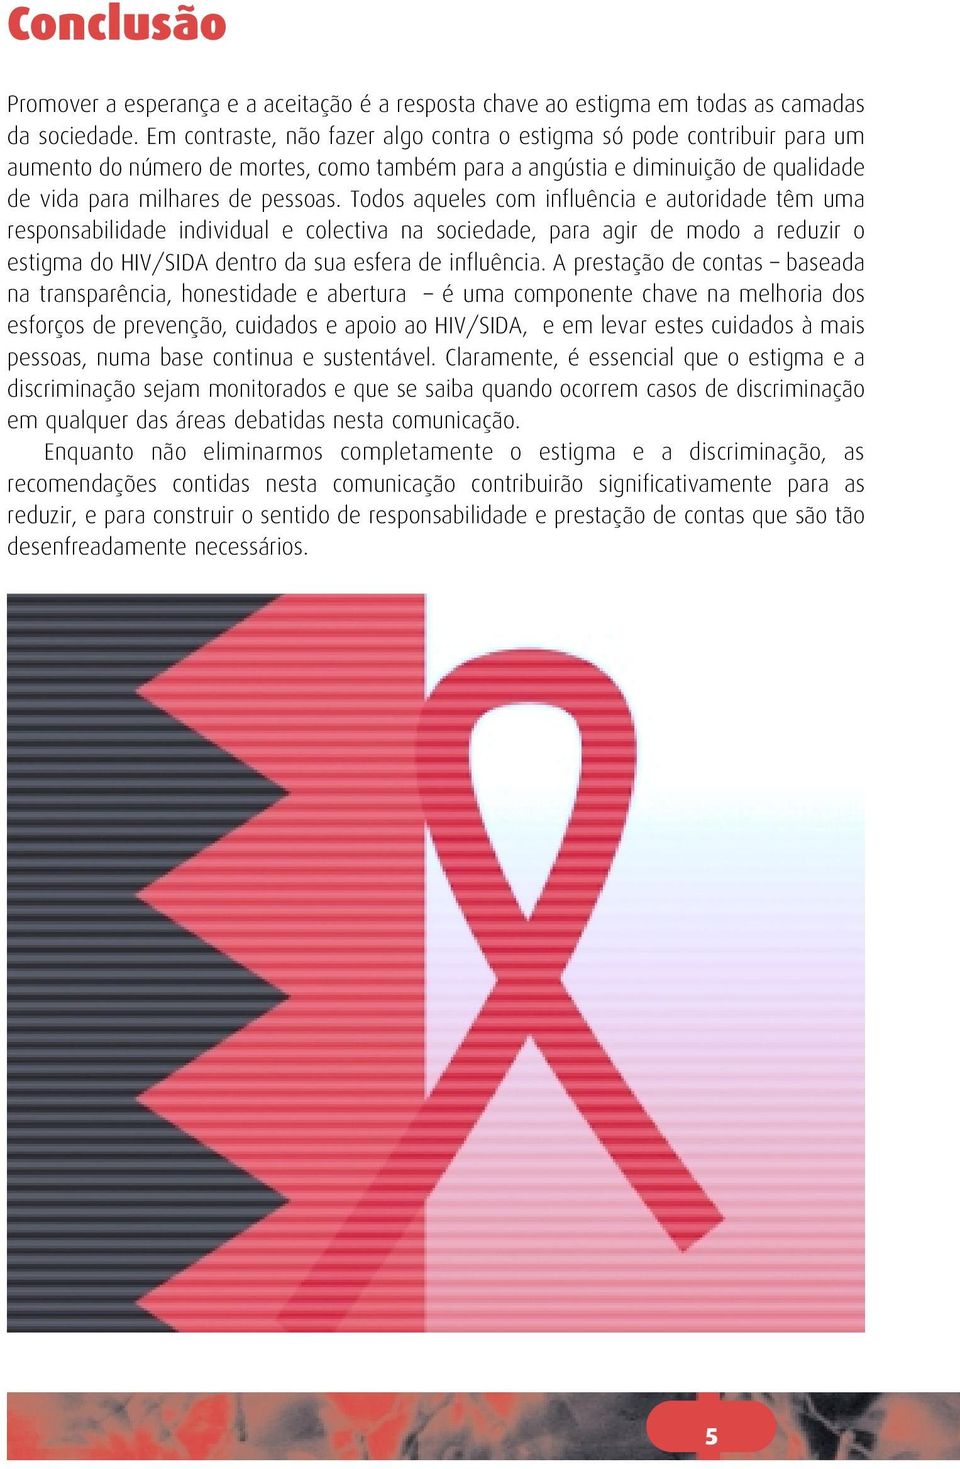 Todos aqueles com influência e autoridade têm uma responsabilidade individual e colectiva na sociedade, para agir de modo a reduzir o estigma do HIV/SIDA dentro da sua esfera de influência.